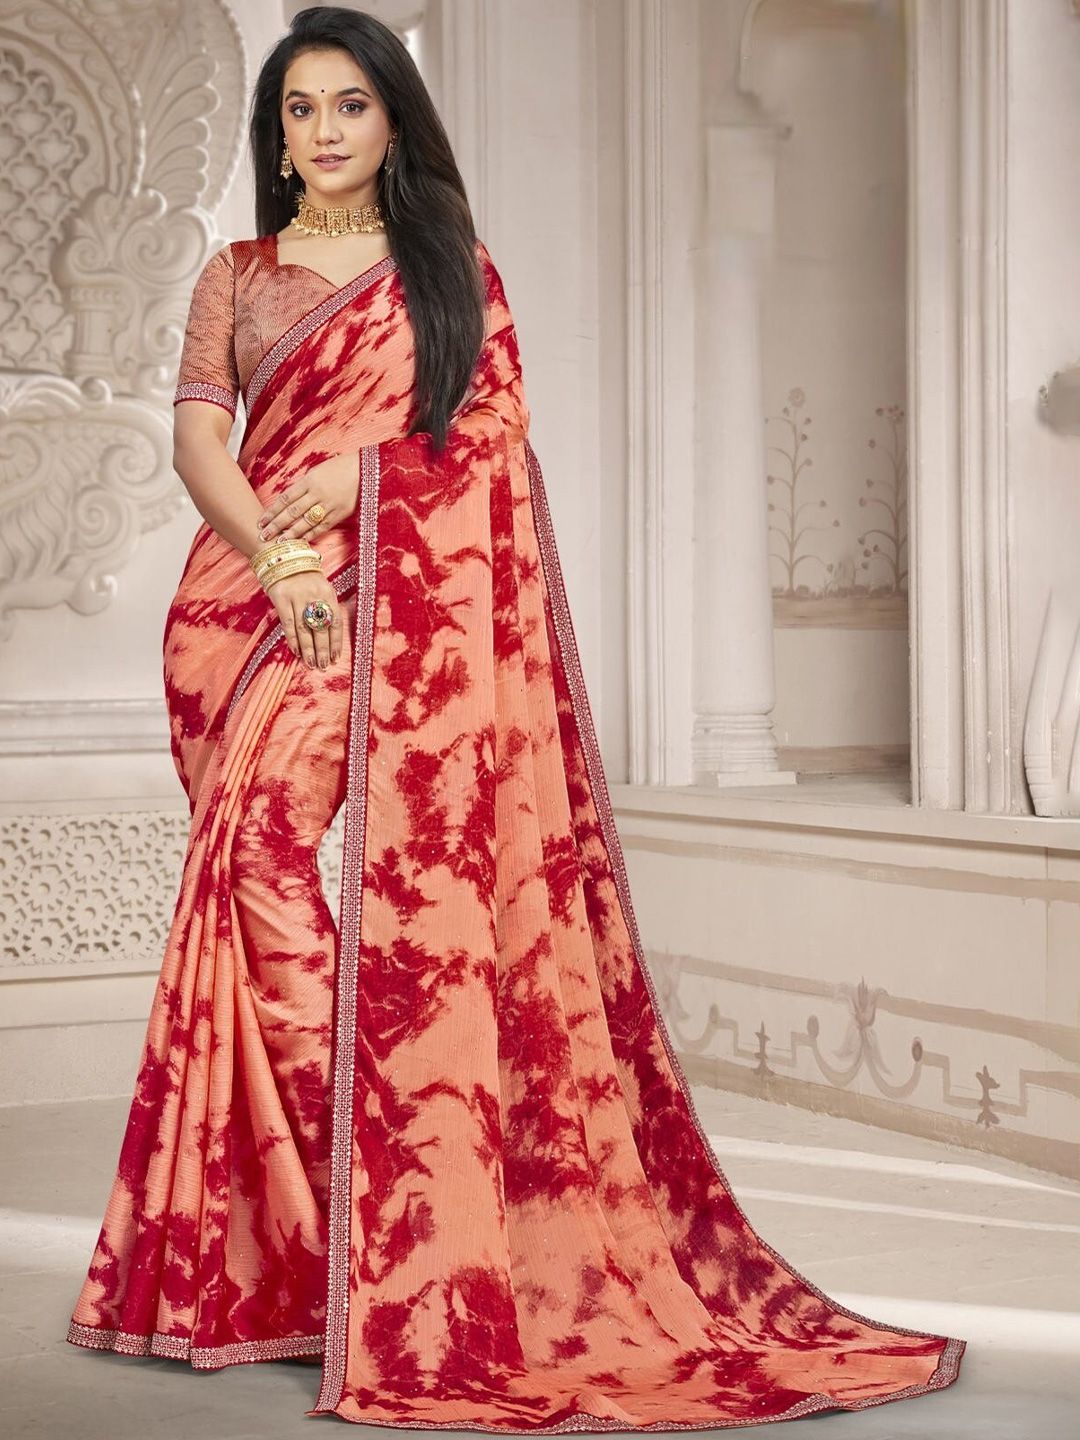 Laxmipati Tie & Dye Poly Chiffon Saree Price in India